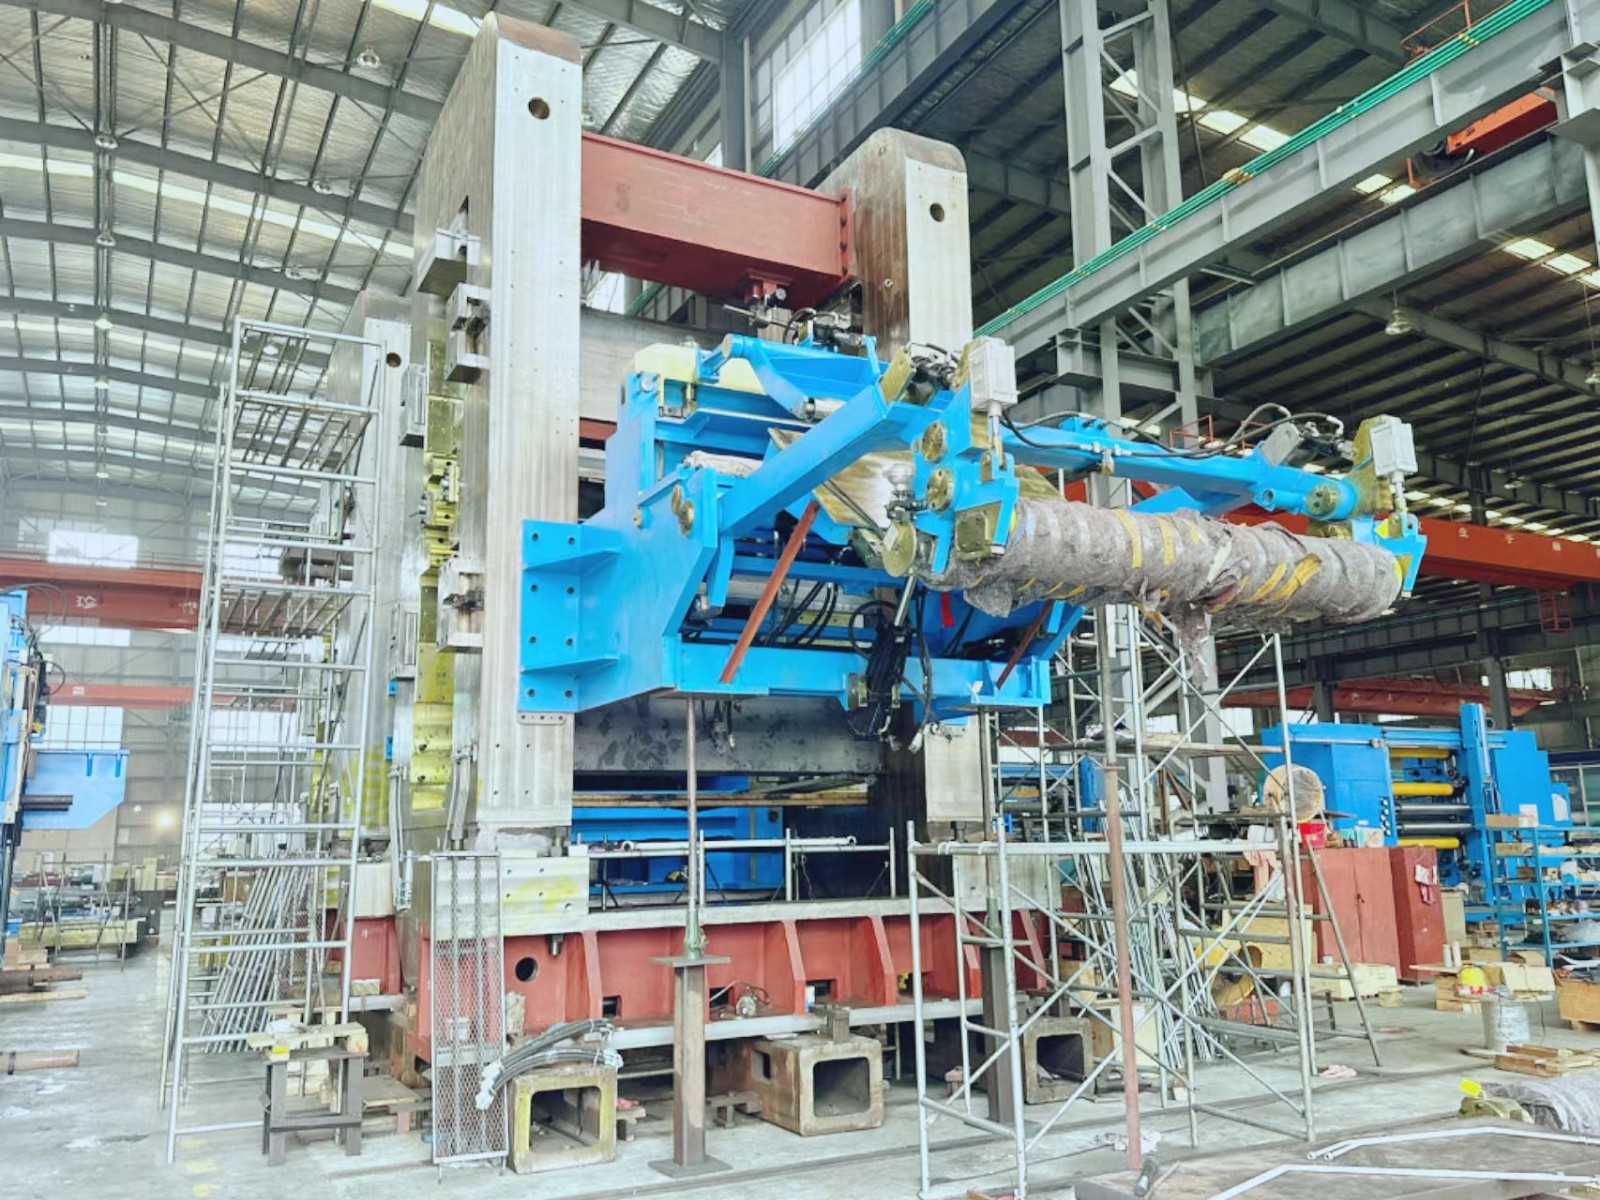 内蒙古联晟新能源材料有限公司2300mm铝板两机架冷精轧机订单的装配测试现场